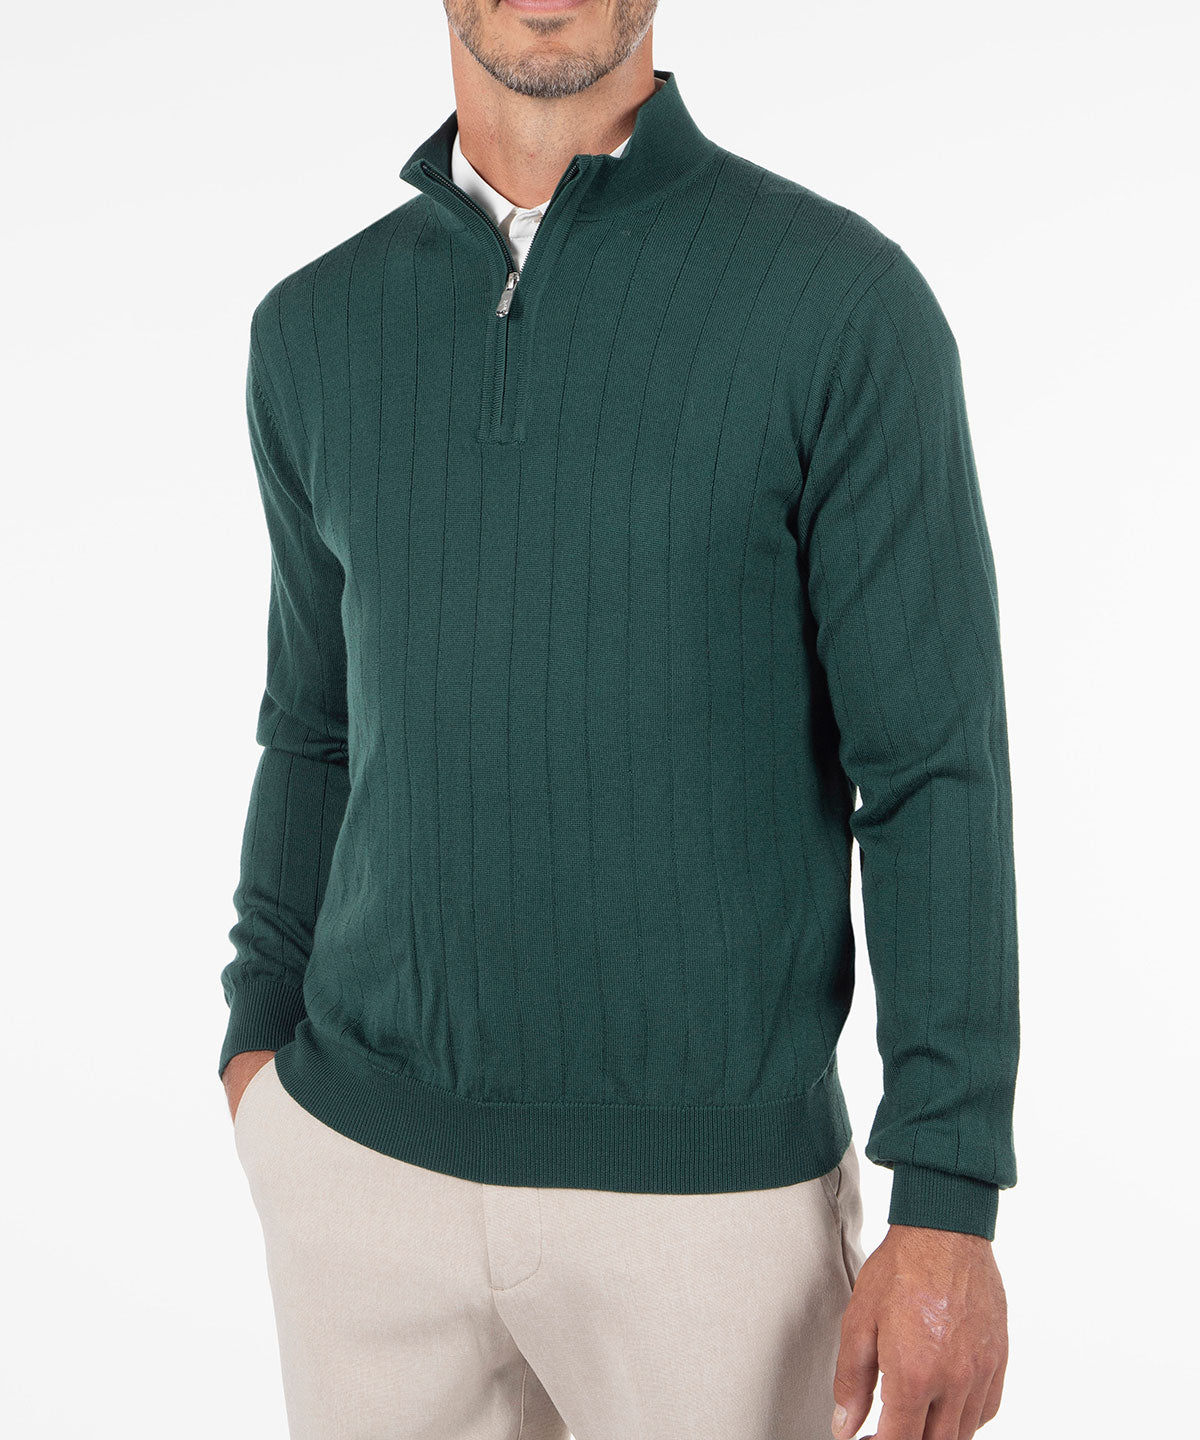 Signature Merino Quarter-Zip Mock Neck Sweater